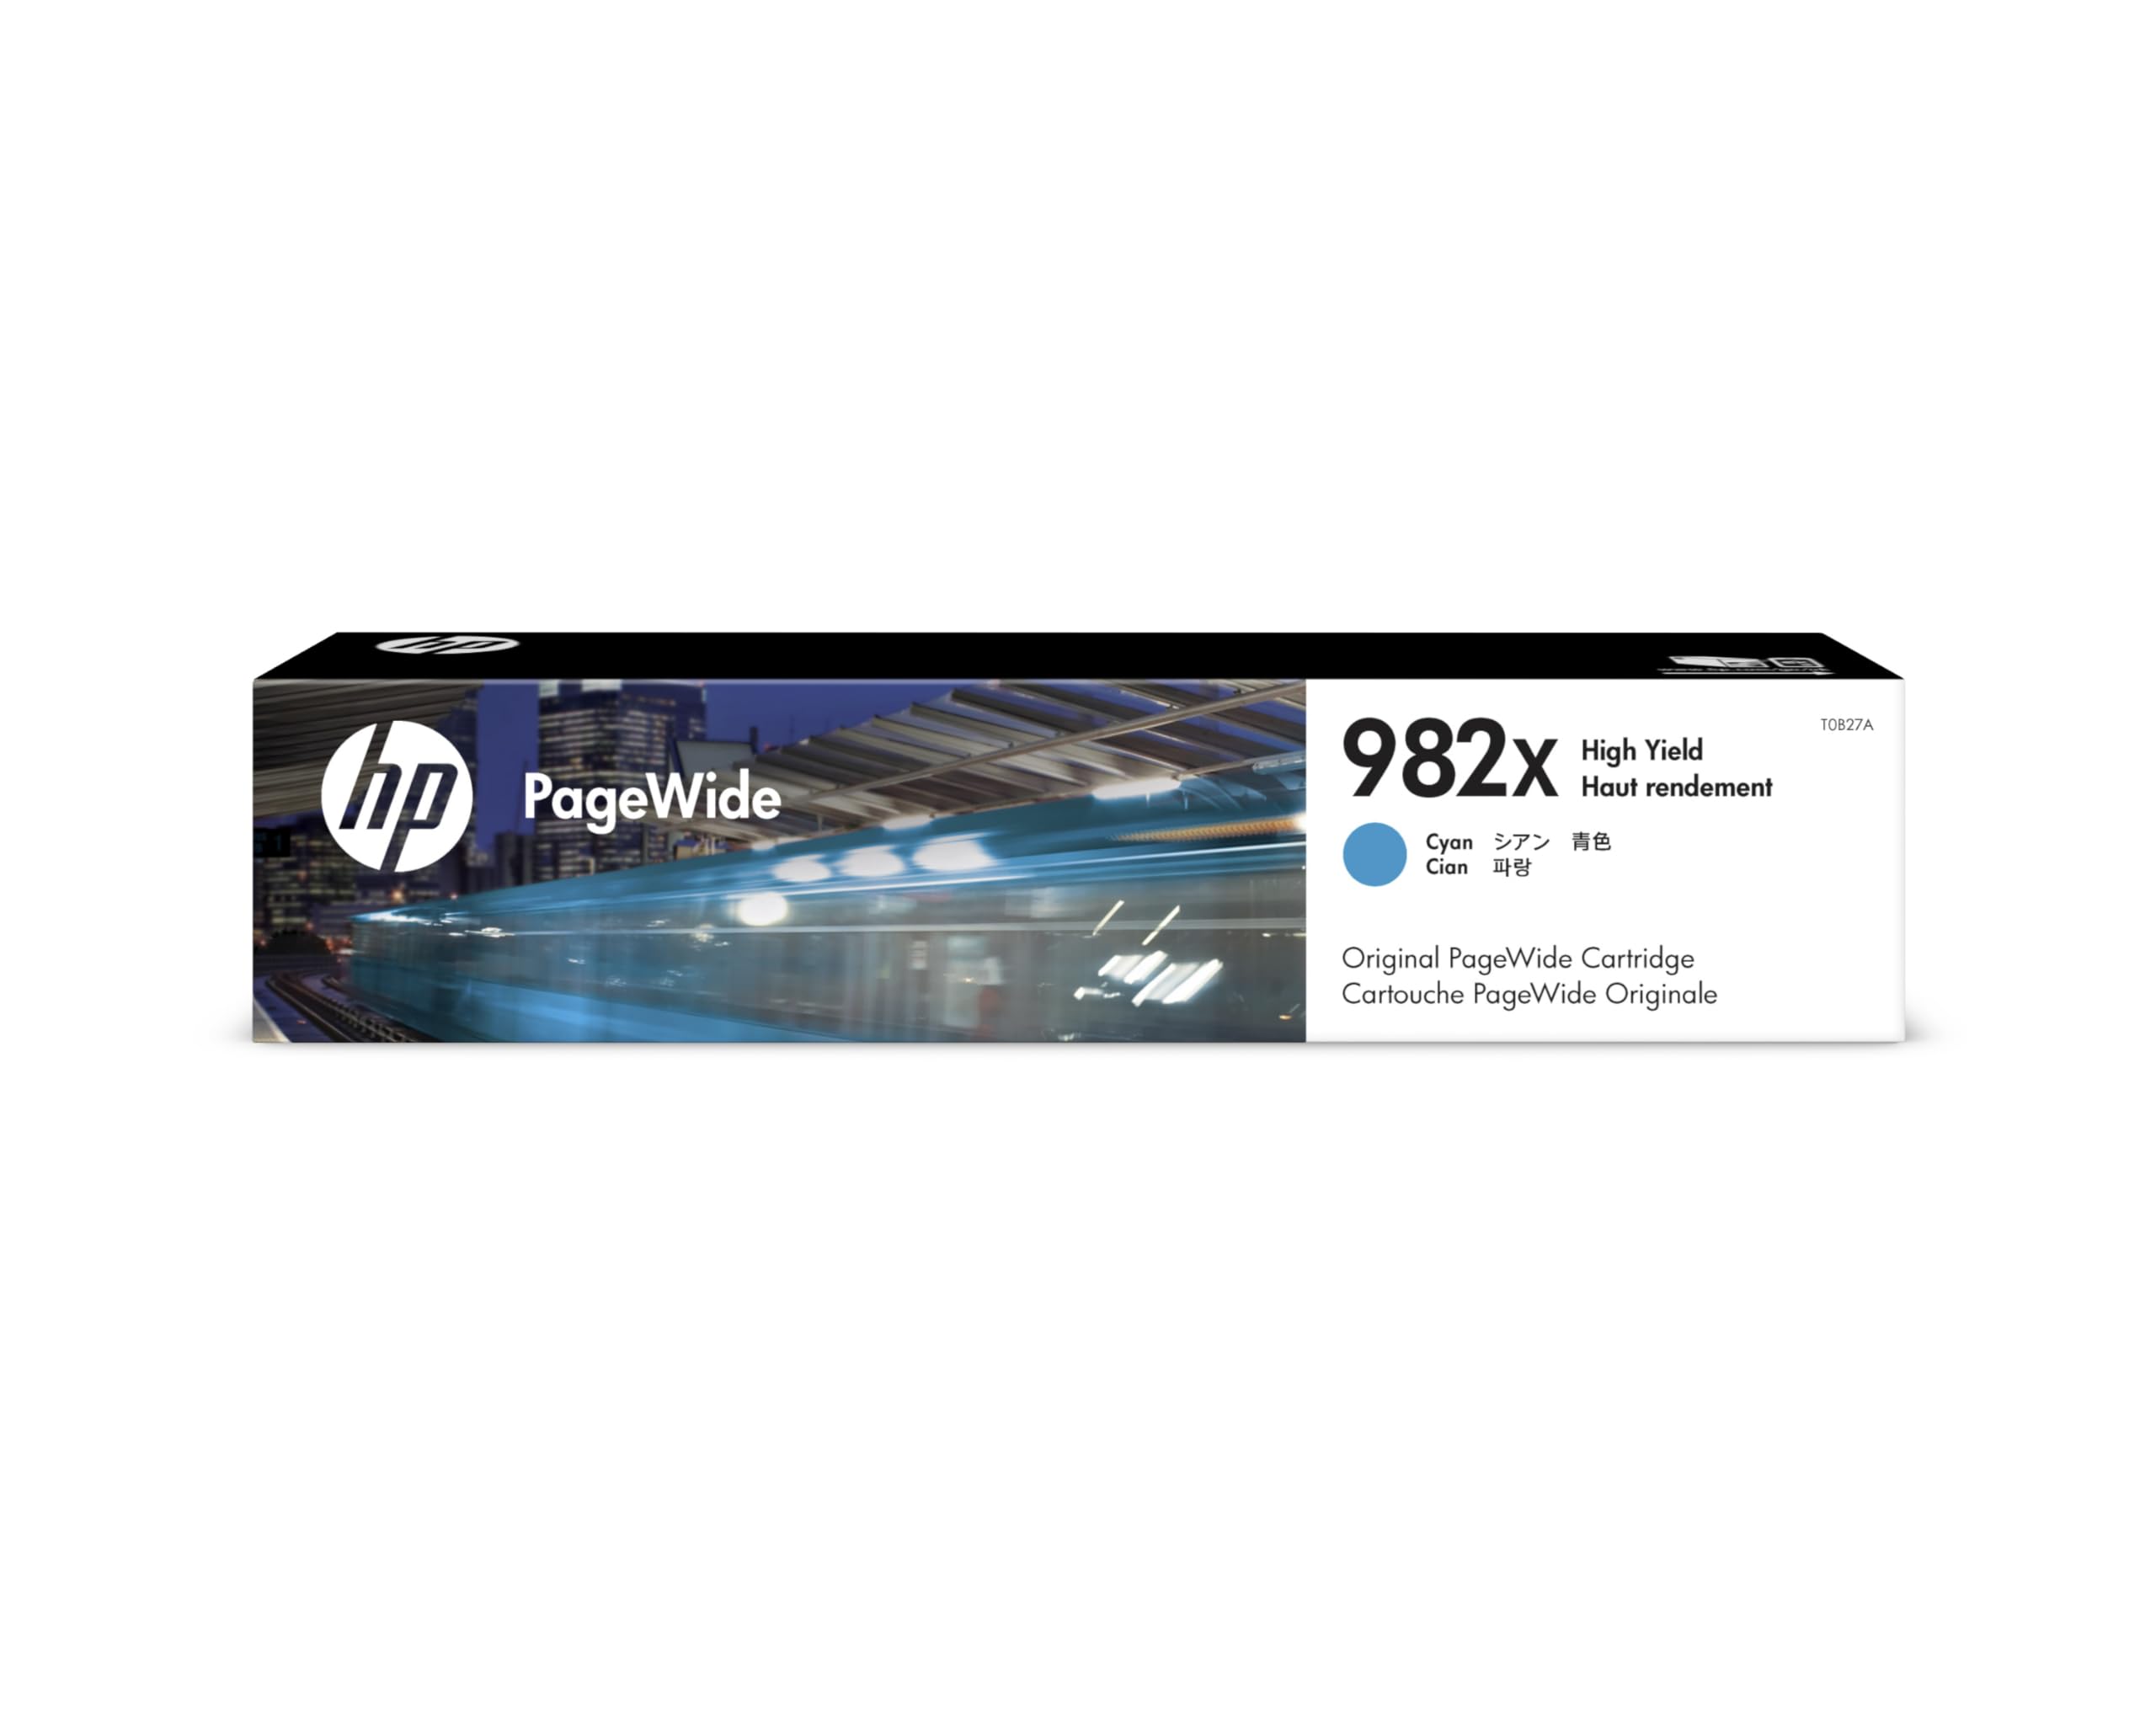 HP 982x (T0B27A) Original Tintenpatrone mit hoher Reichweite für PageWide Drucker, Cyan